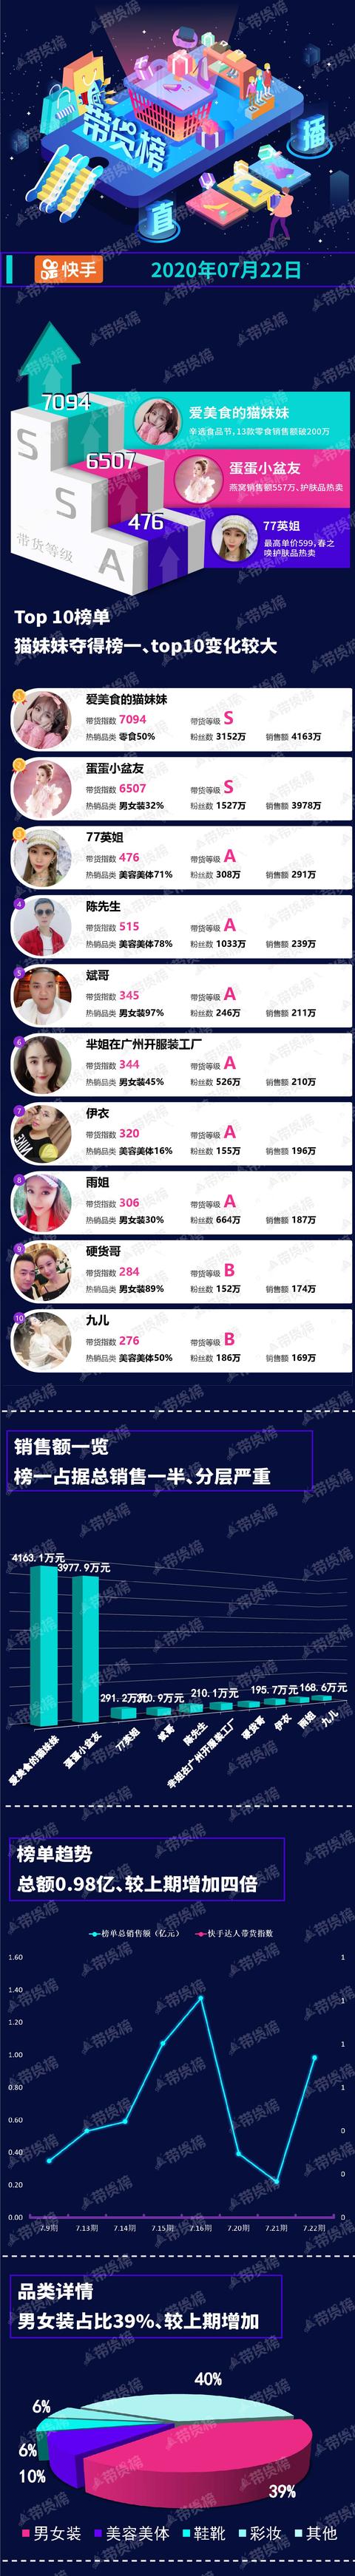 电商带货榜（7.22）| 刘涛曲播首秀带货35万；快手总销售额9817万